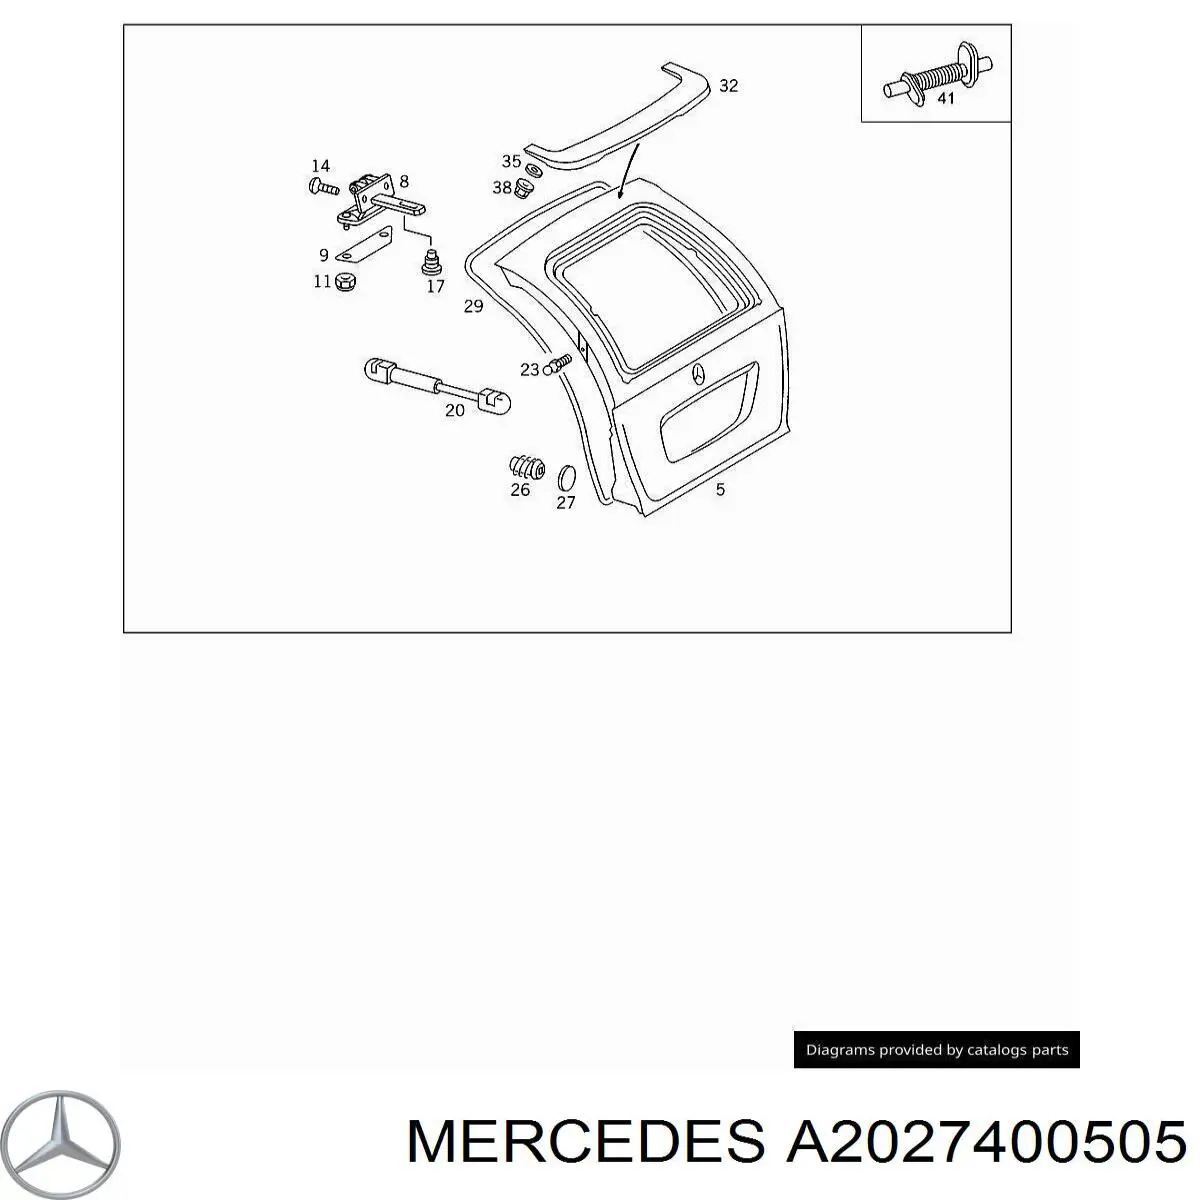 A2027400505 Mercedes puerta del maletero, trasera